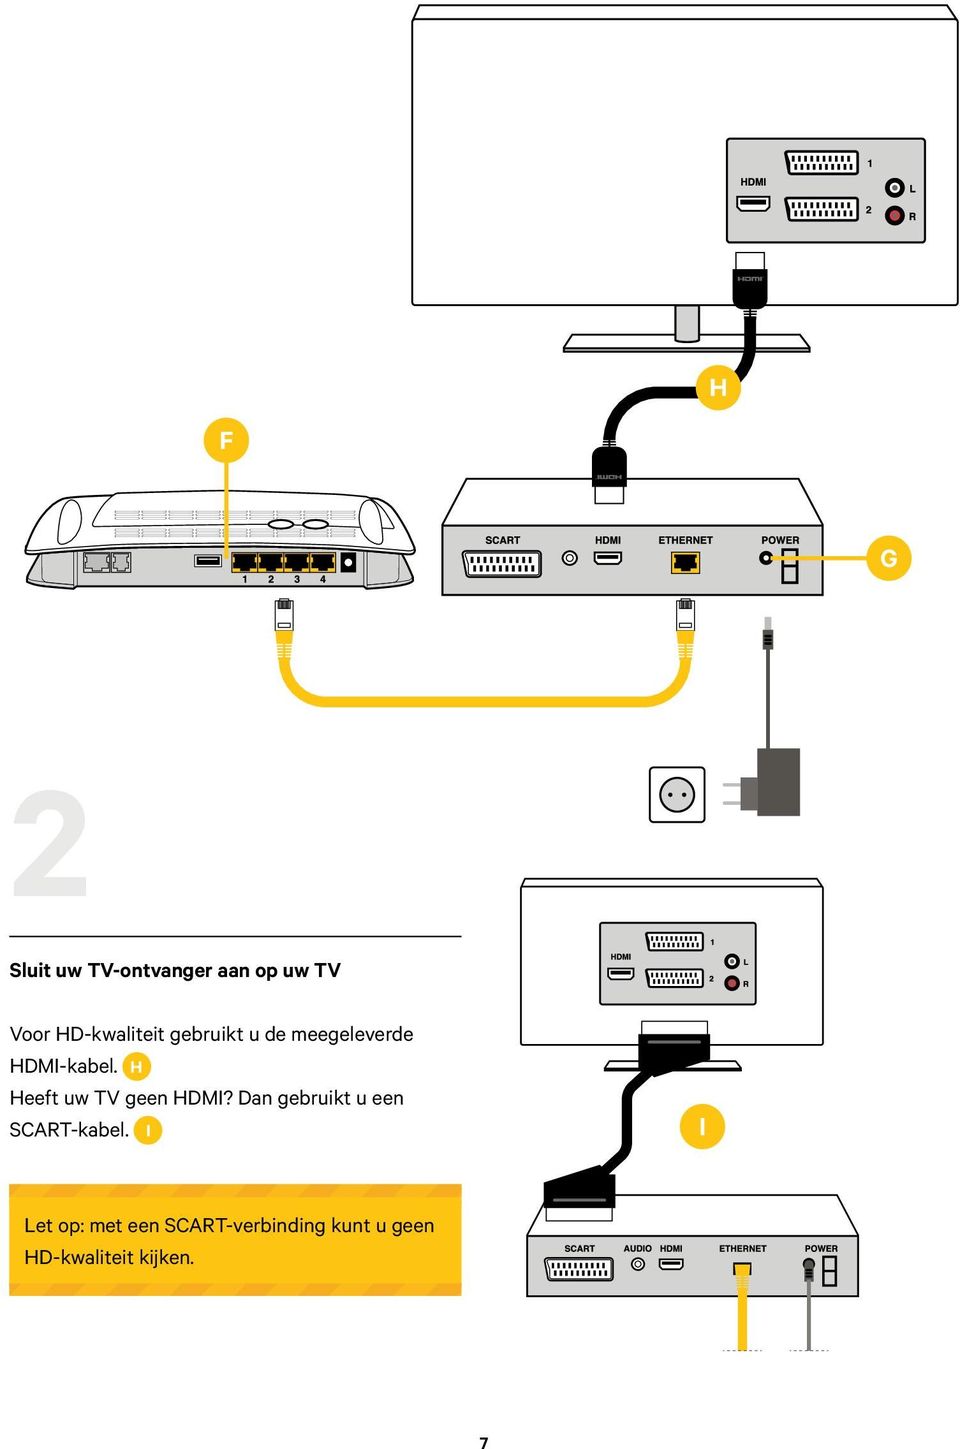 H Heeft uw TV geen HDMI? Dan gebruikt u een SCART-kabel.